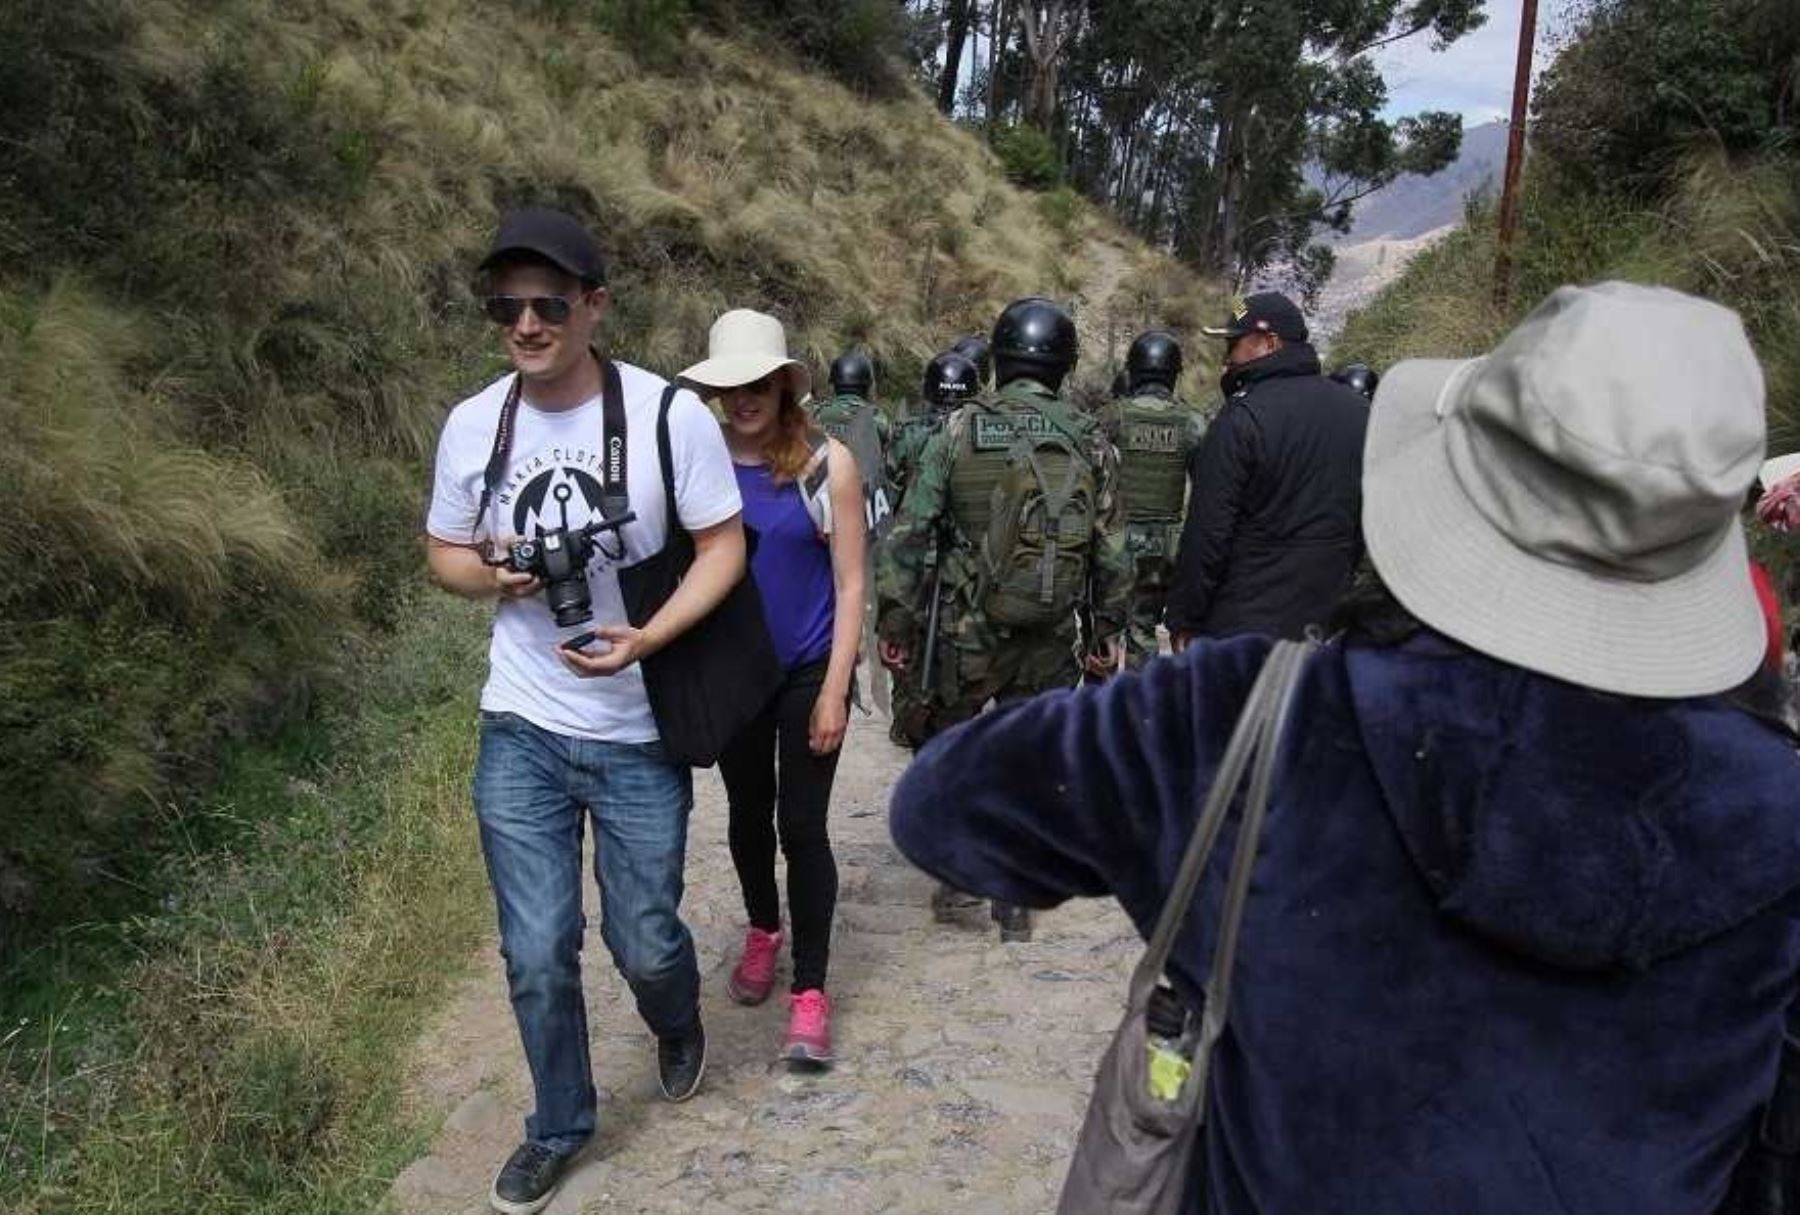 La Cámara de Comercio de Cusco propuso a sectores empresariales vinculados al turismo la creación de un Centro de Investigación para evaluar conflictos sociales y buscar soluciones para no afectar el flujo turístico que va en crecimiento en esa región.